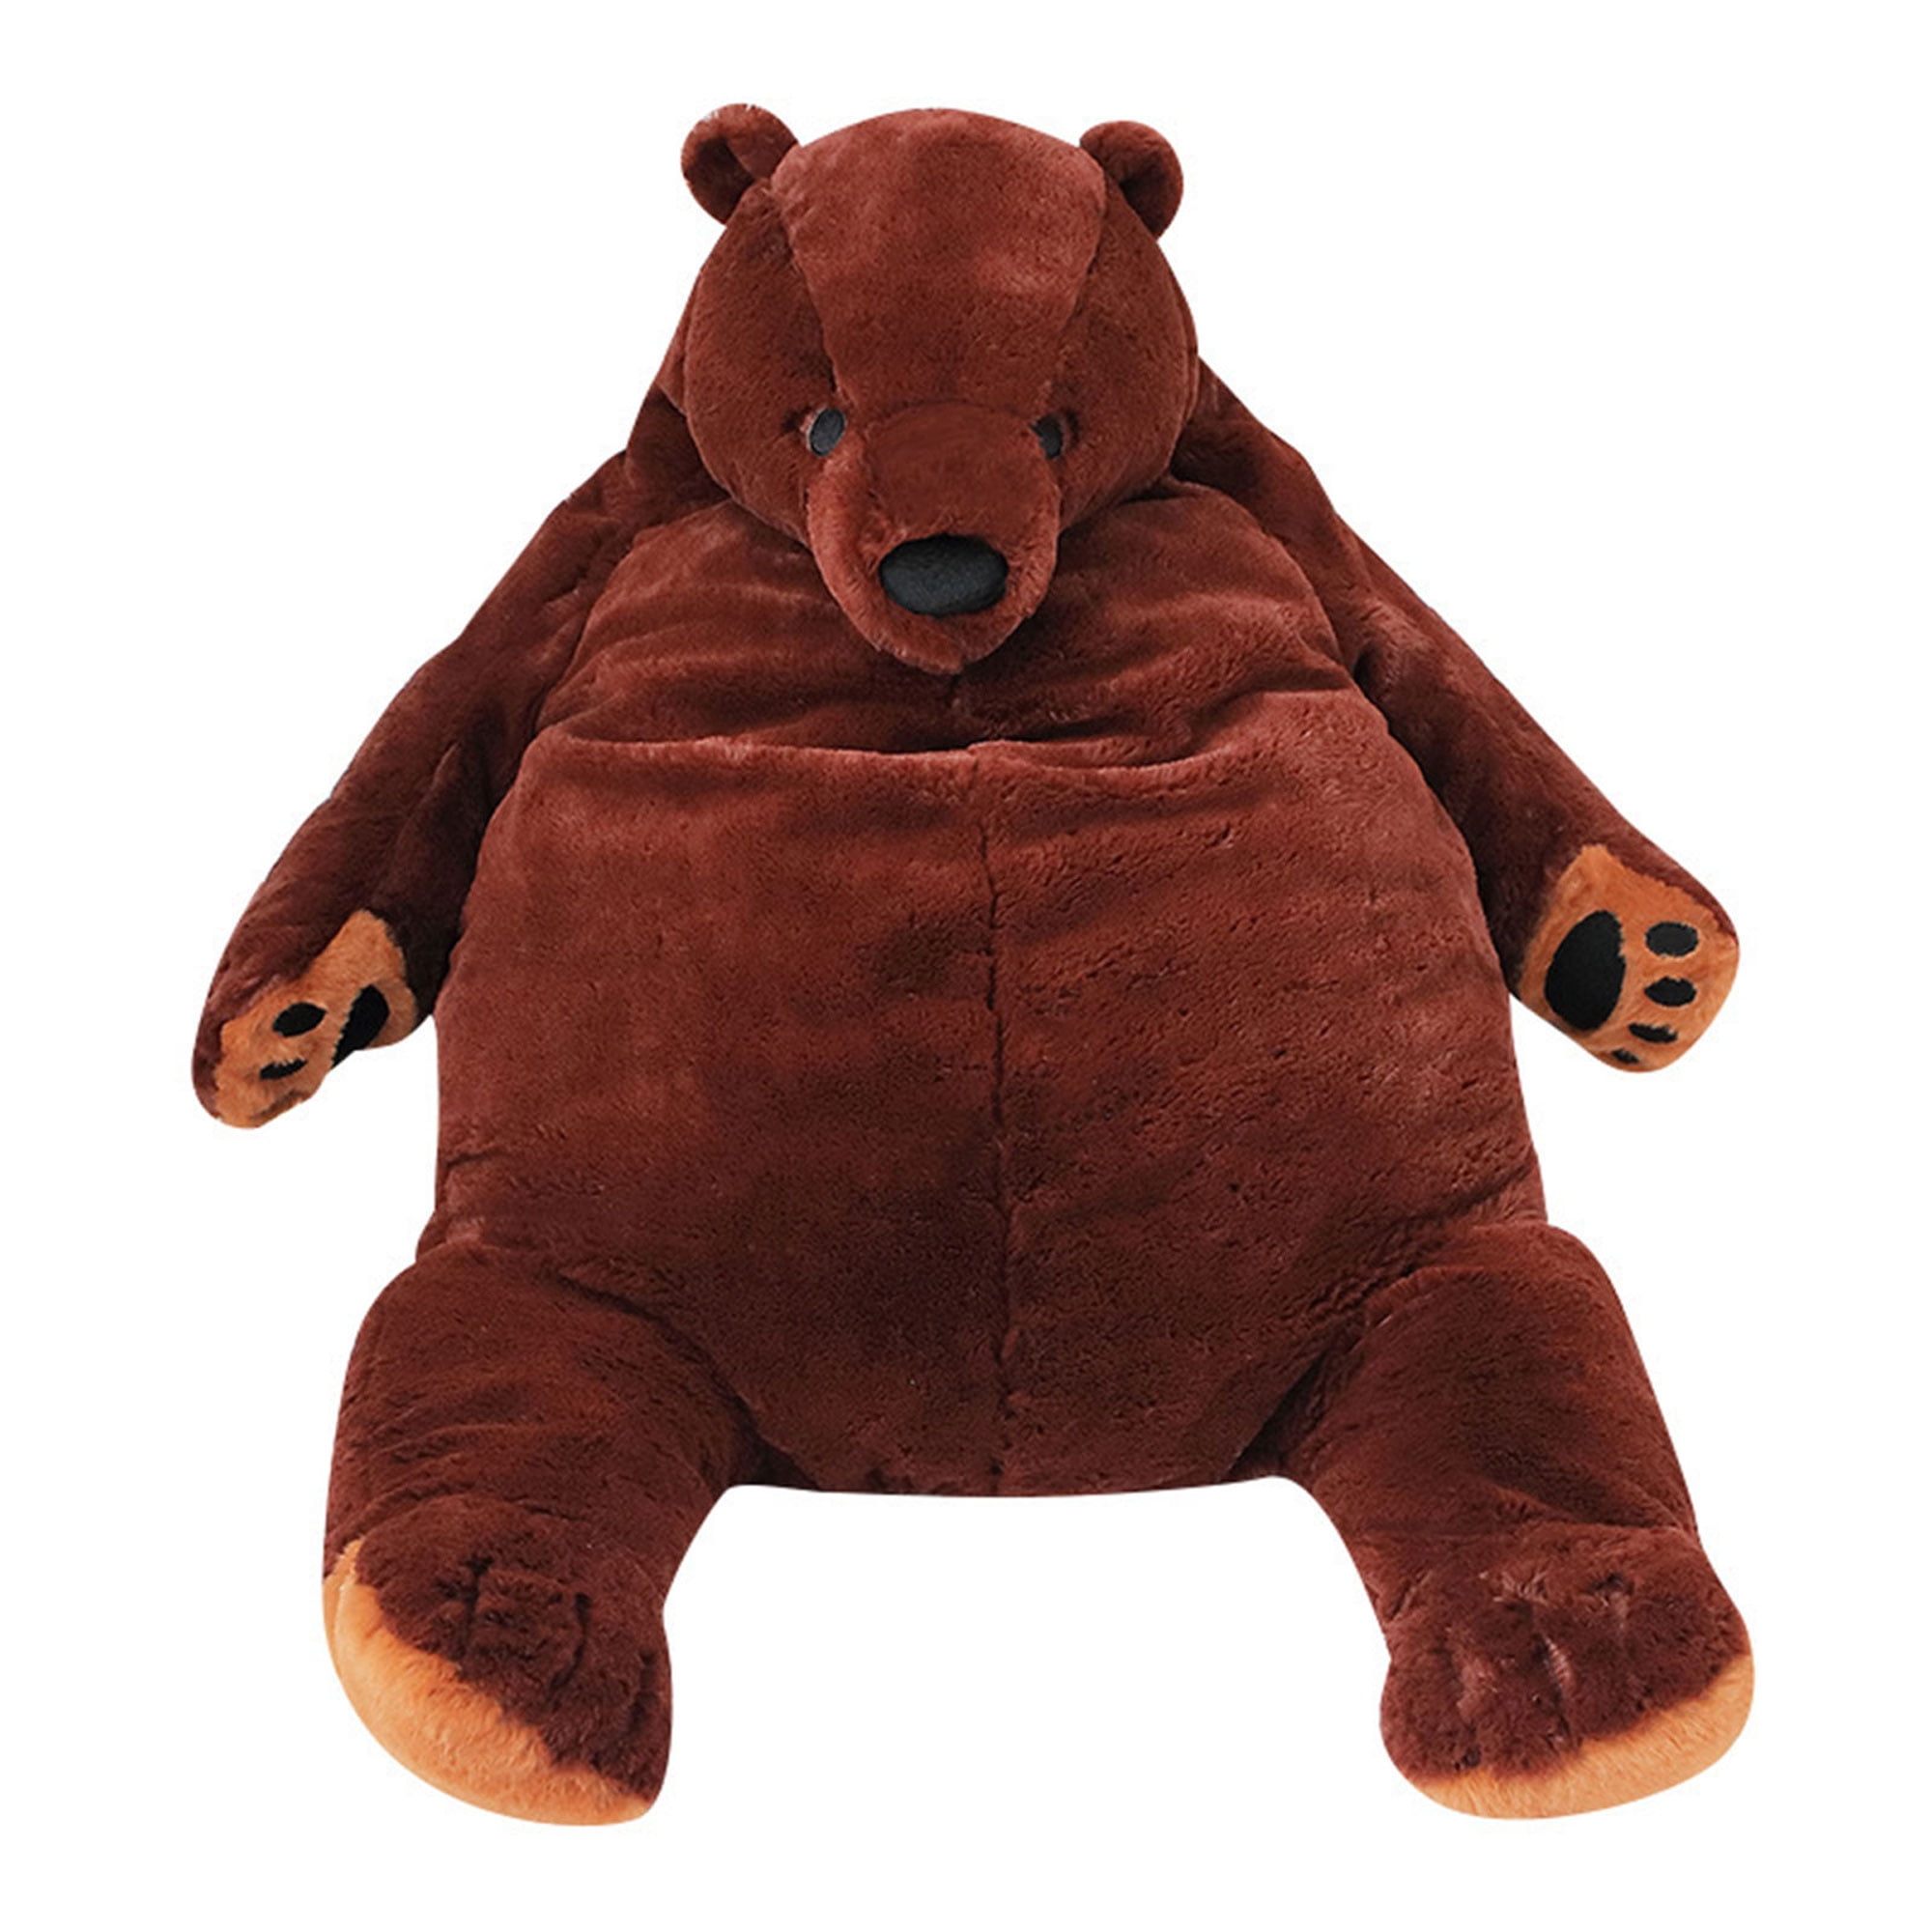 60cm~200CM Giant Big Plush Stuffed Teddy Bear Soft 100% Cotton Doll Toy Kid Gift 